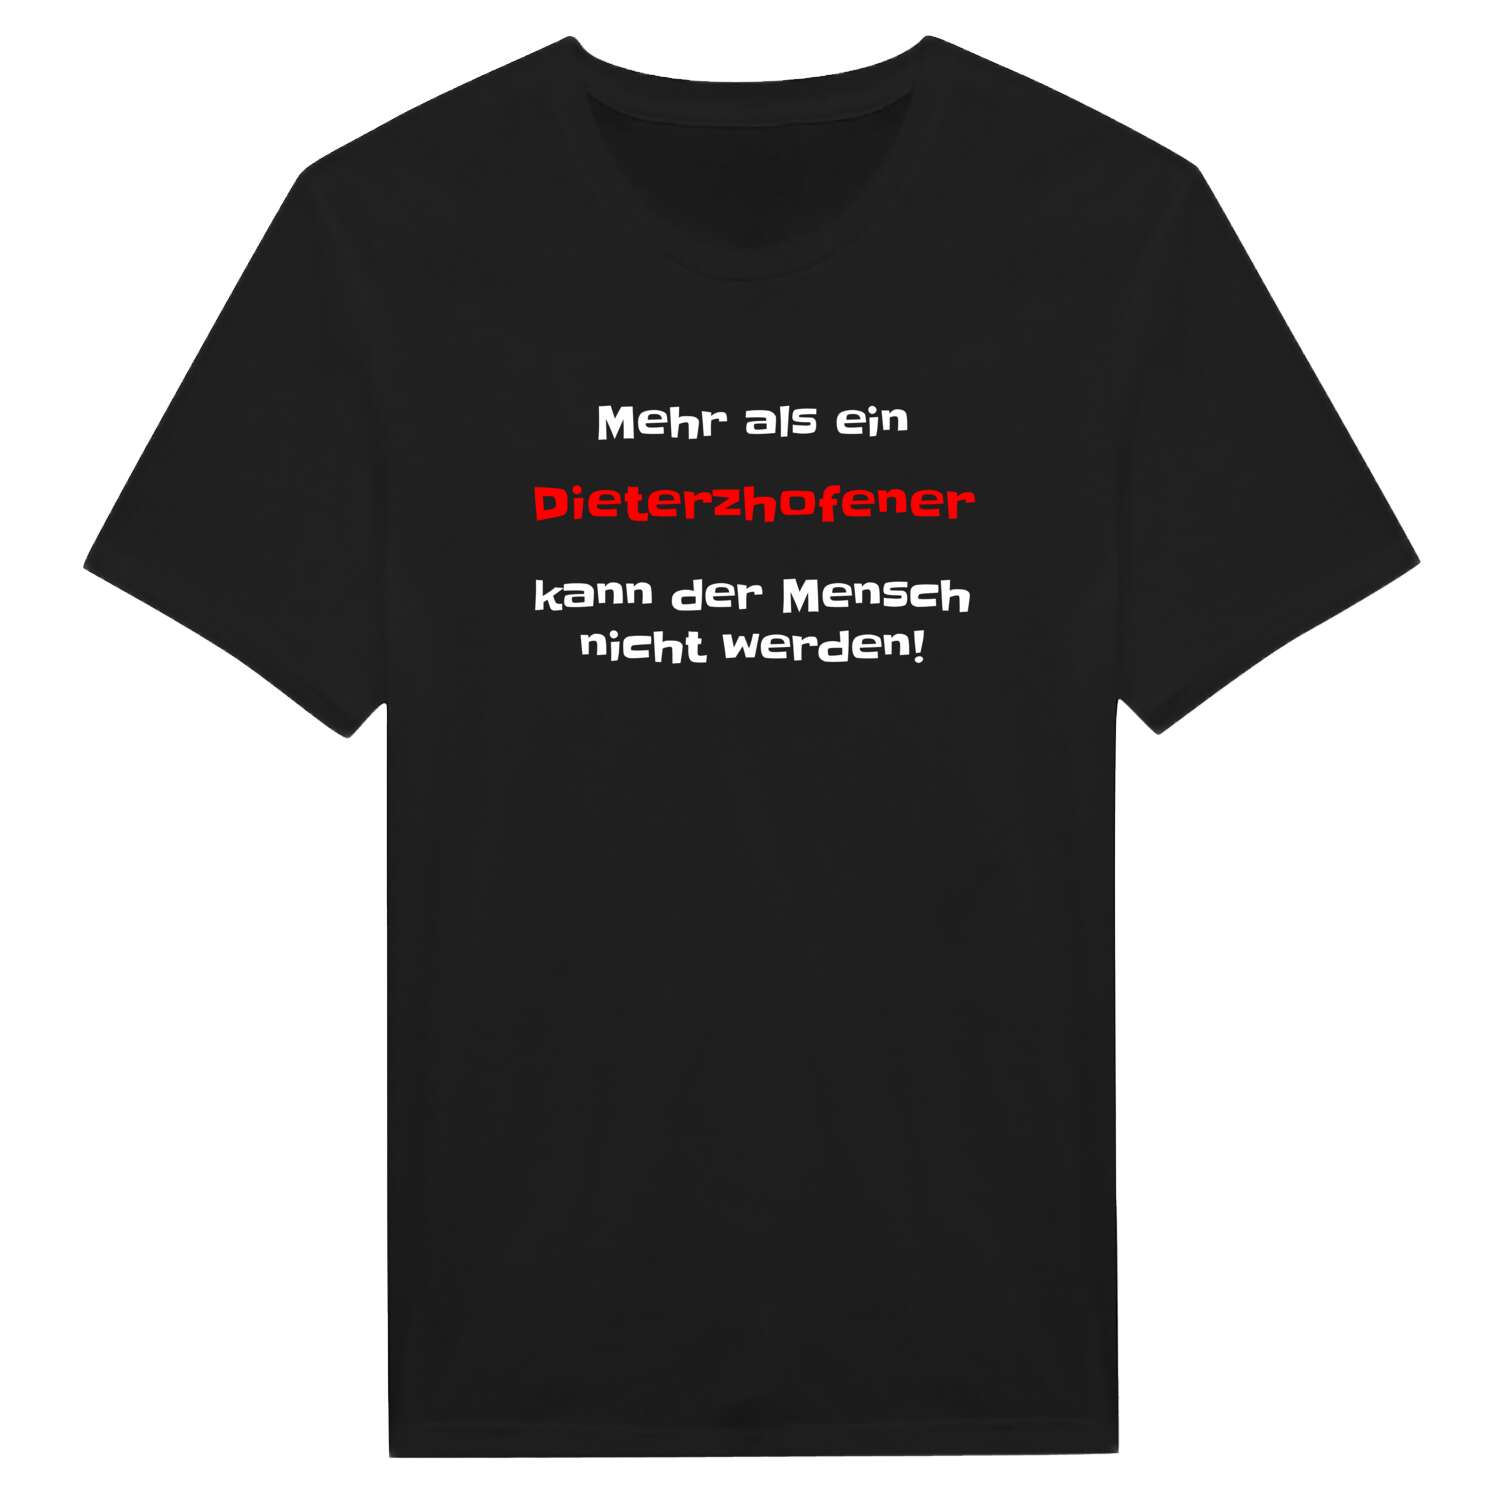 Dieterzhofen T-Shirt »Mehr als ein«